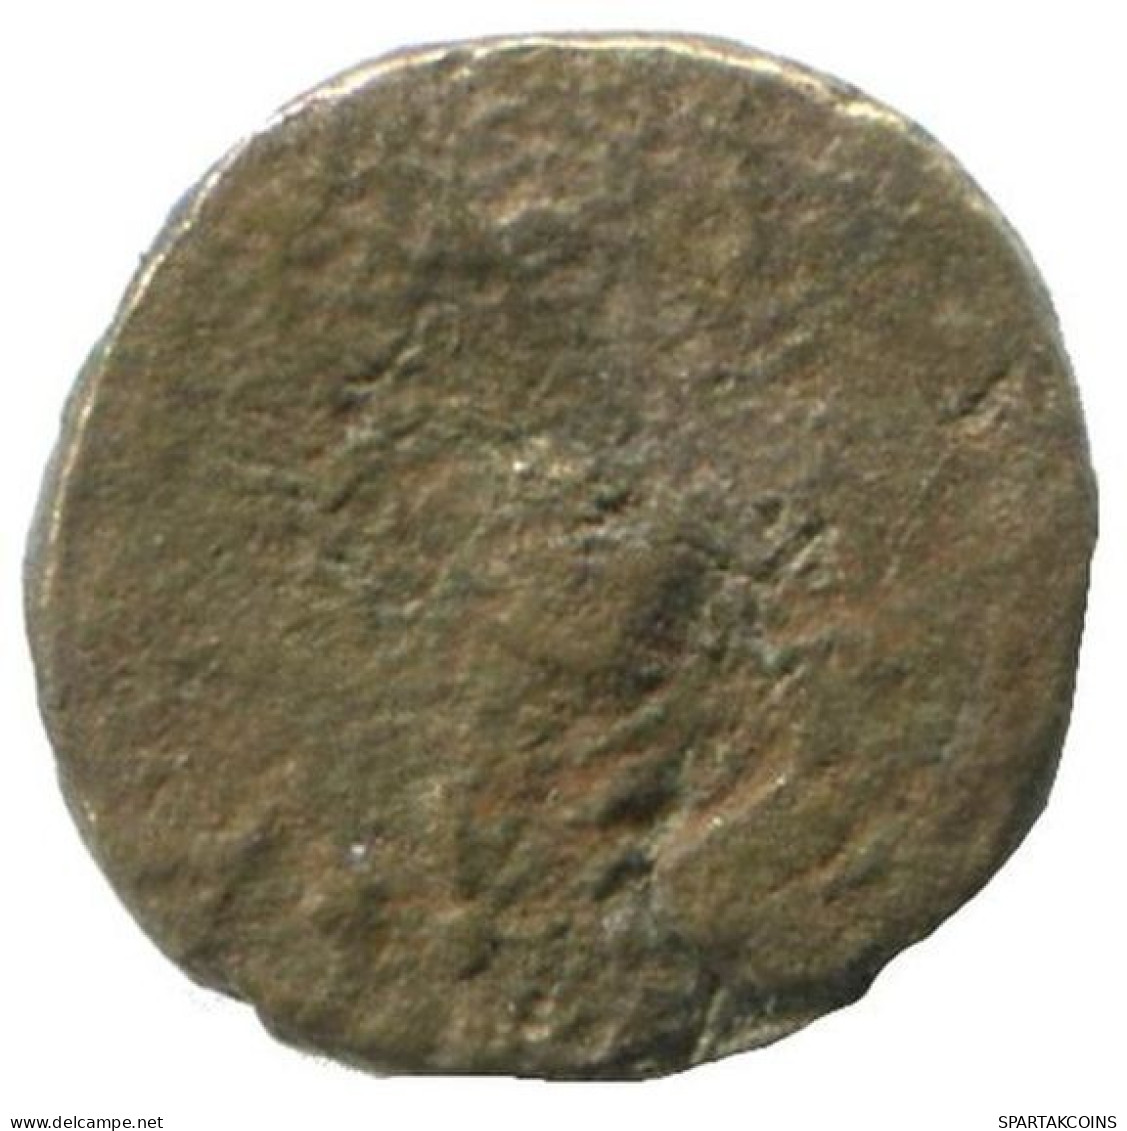 Authentic Original Ancient GREEK Coin 0.5g/8mm #NNN1256.9.U.A - Griekenland